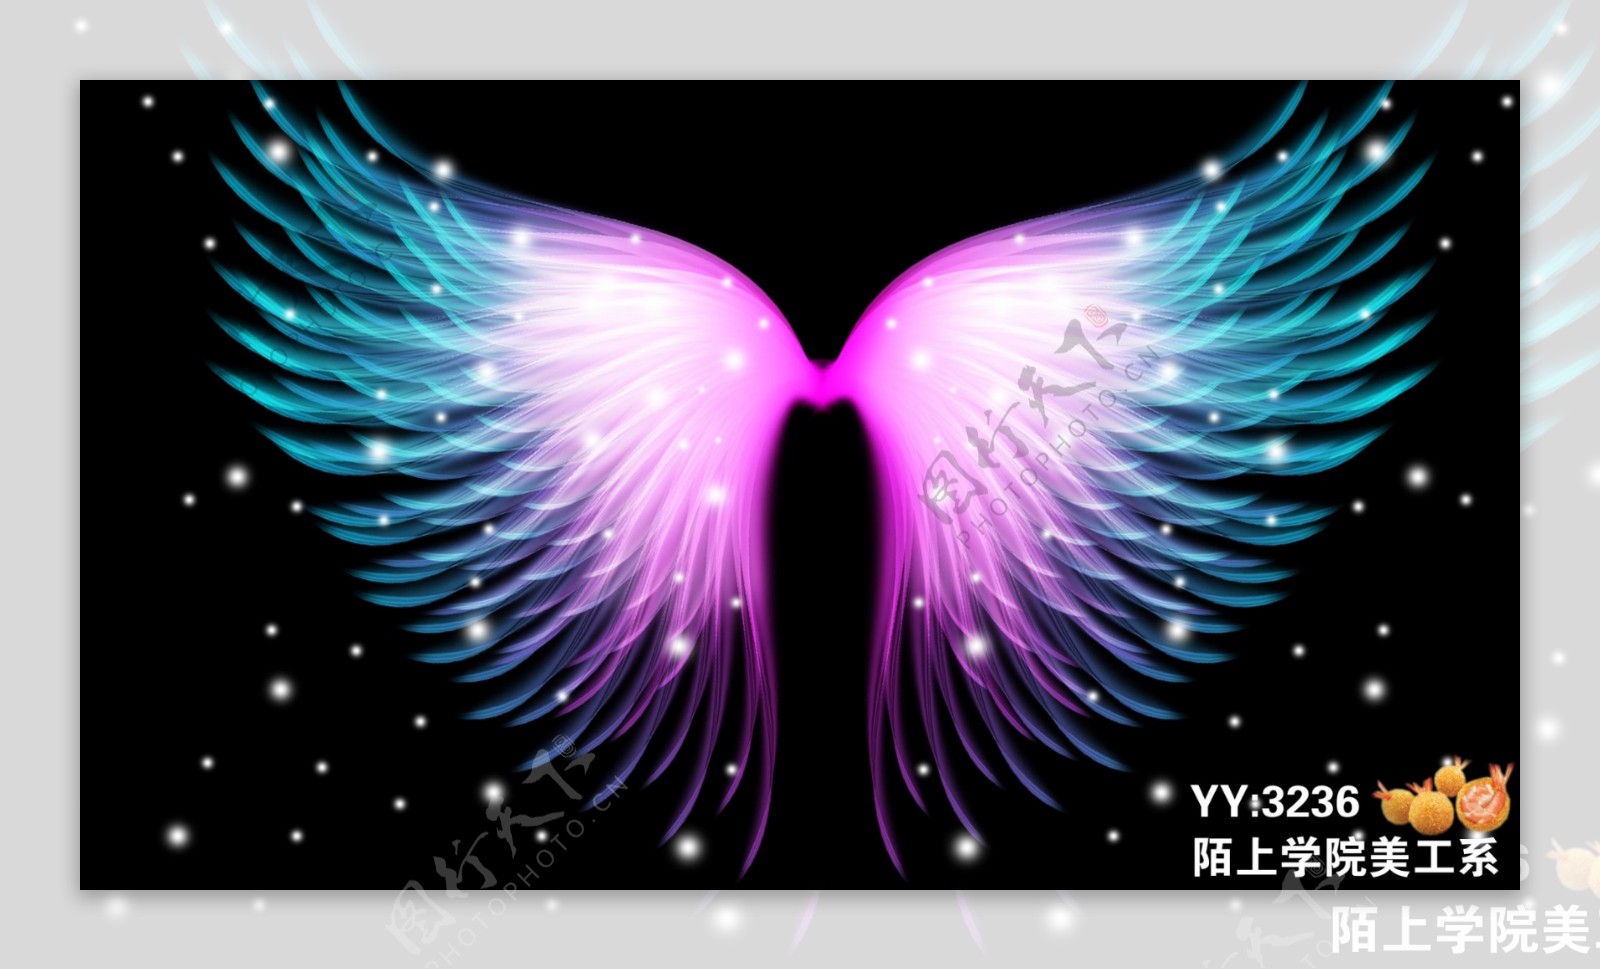 天使翼 库存图片. 图片 包括有 天使, 双翼飞机, 宗教, 宗教信仰, 天空, 云彩, 飞行, 天堂般 - 20726115